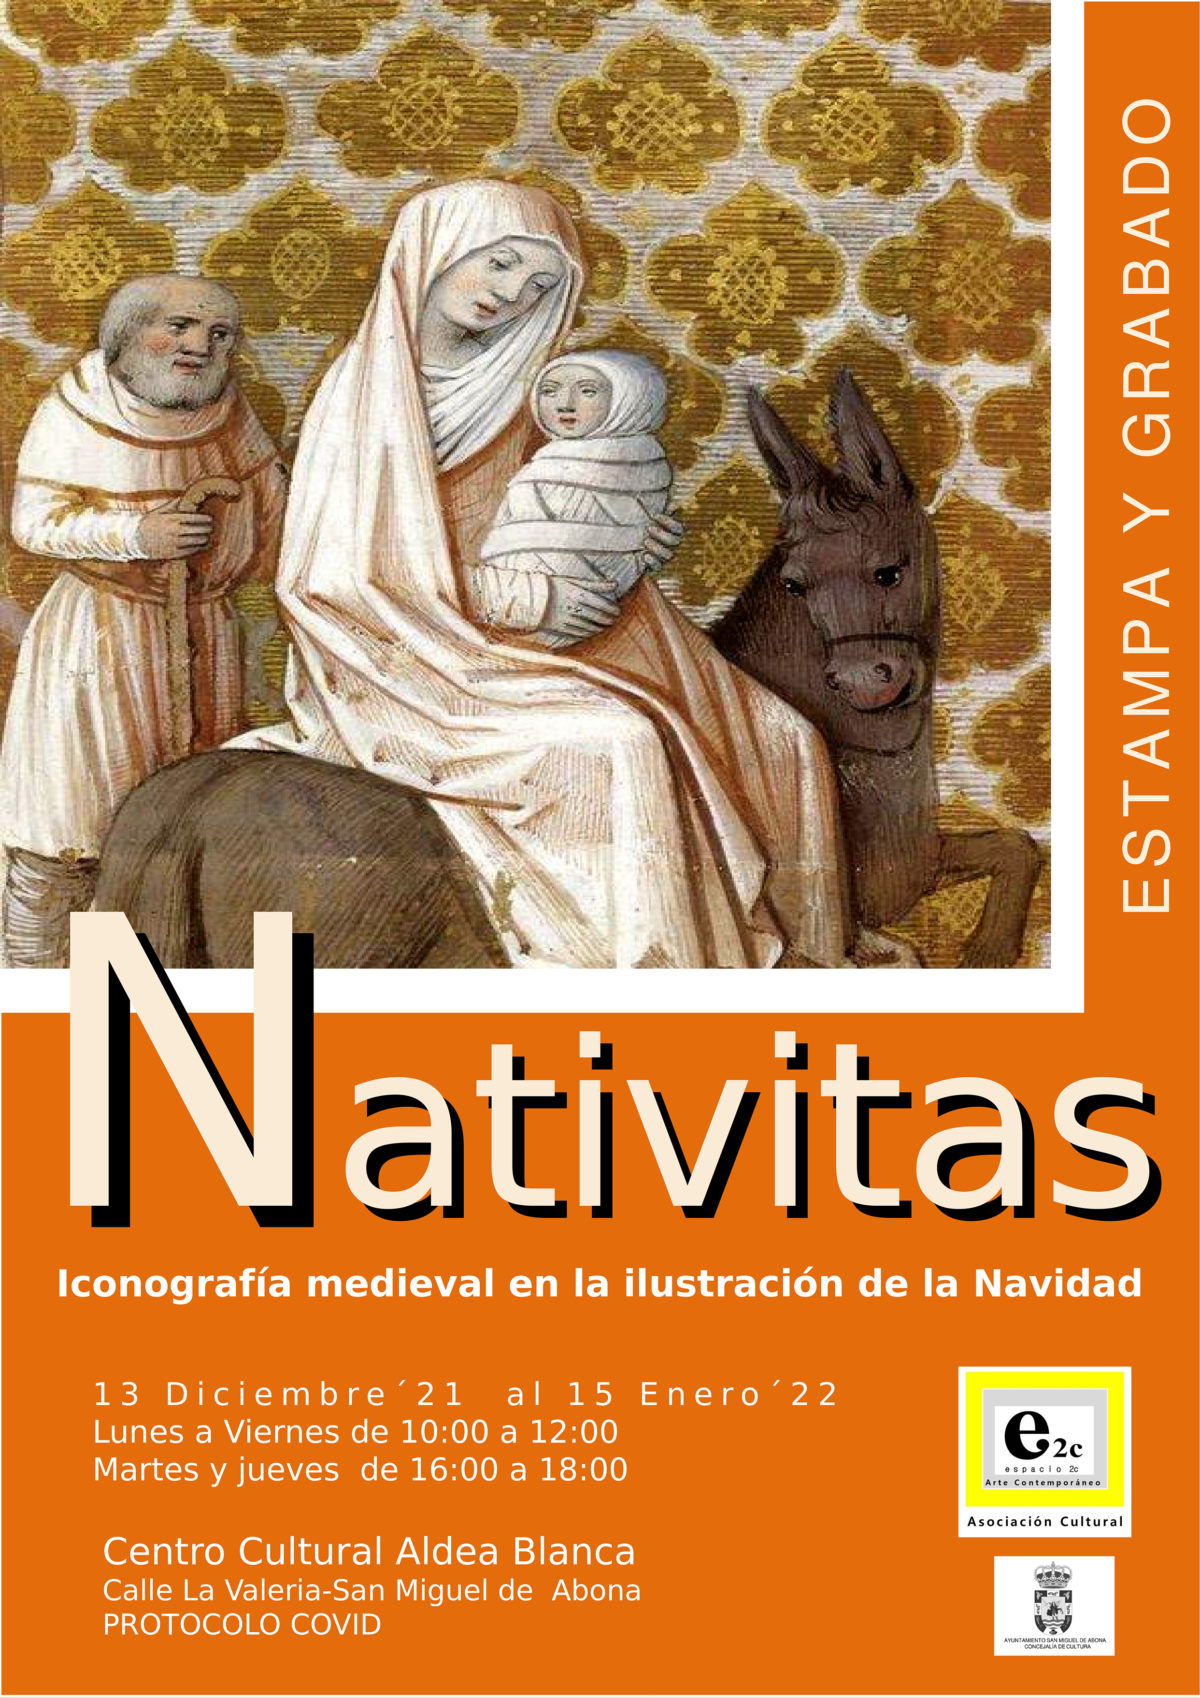 Nativitas 2021. Iconografía medieval en la ilustración de la Navidad. Estampa y grabado